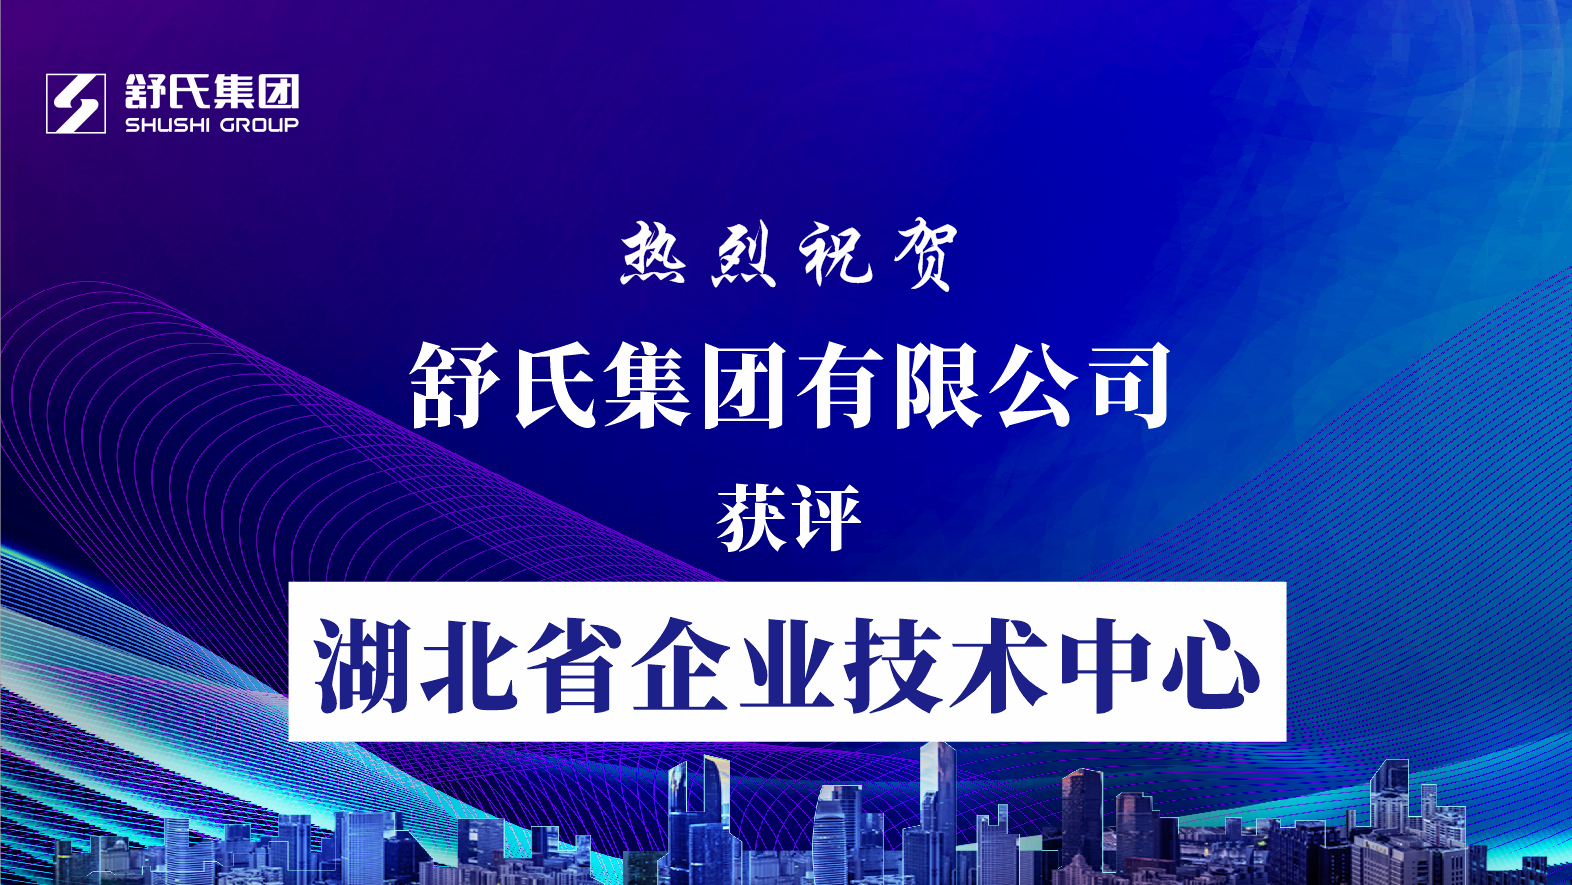 喜讯播报·舒氏集团获评湖北省企业技术中心